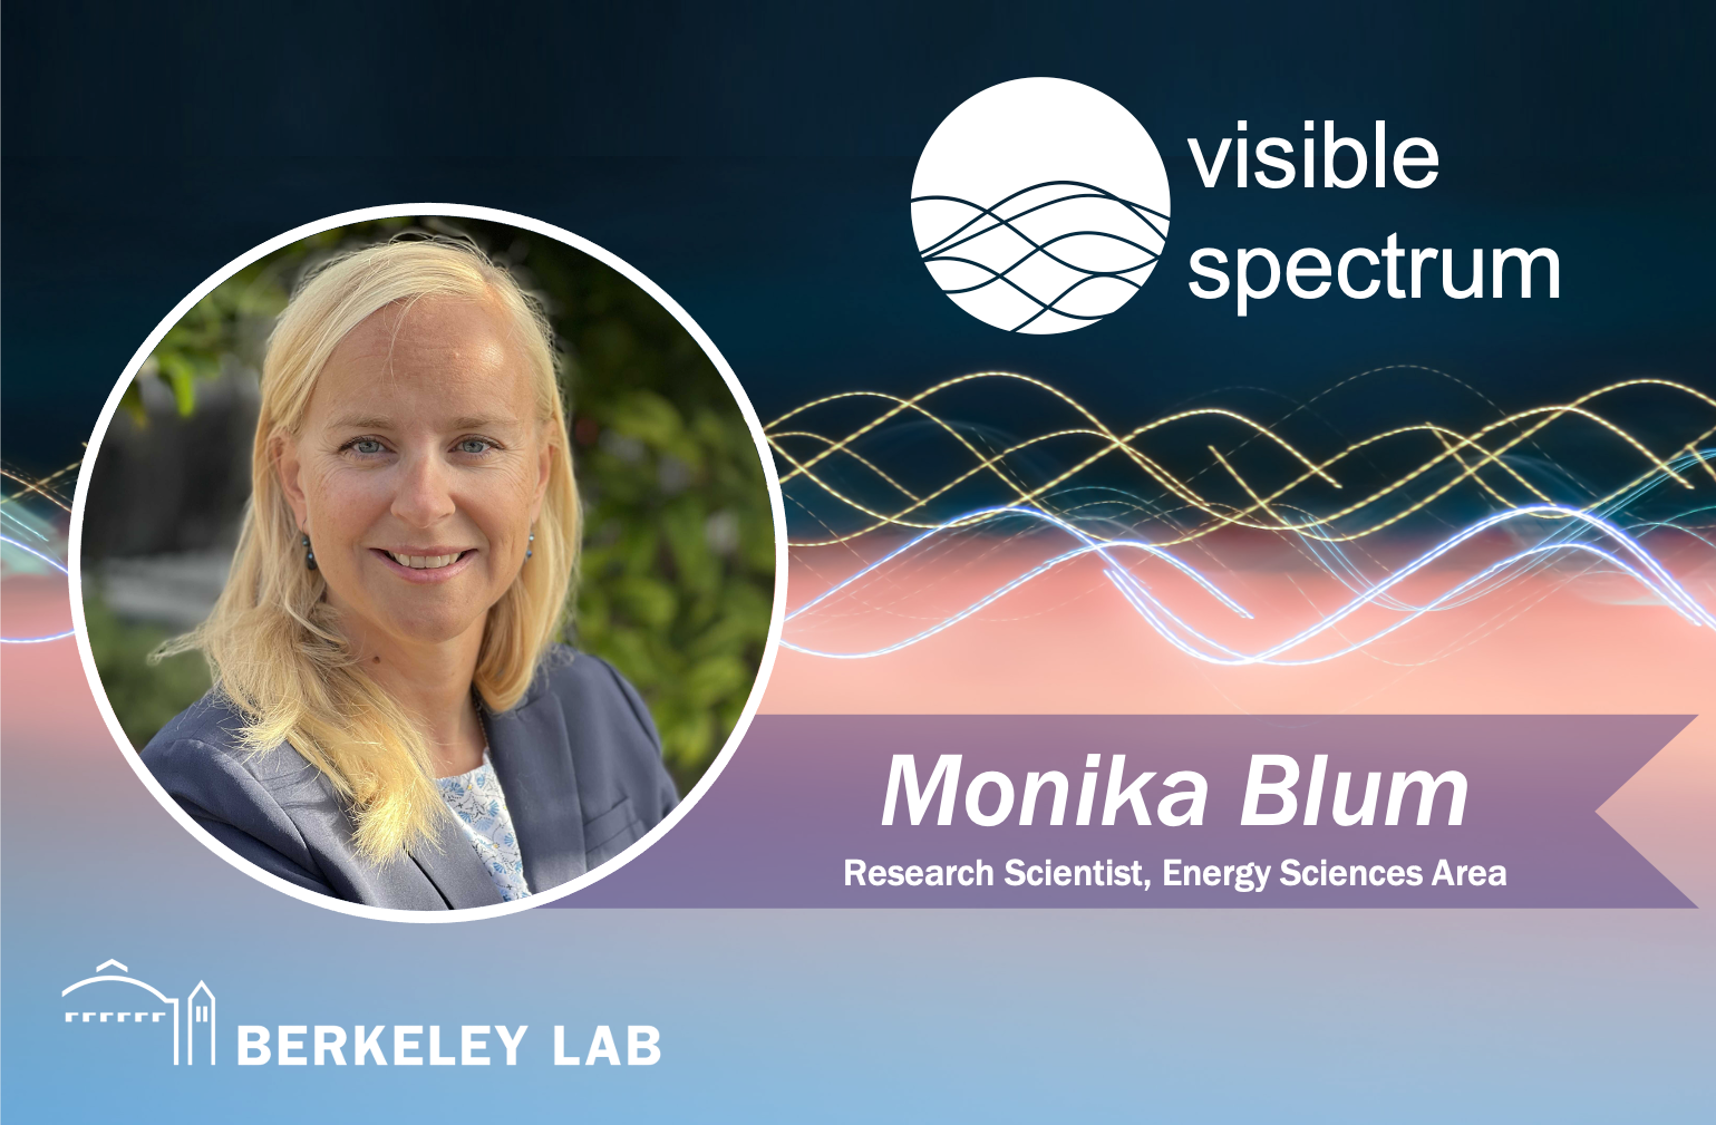 Monika Blum for Visible Spectrum